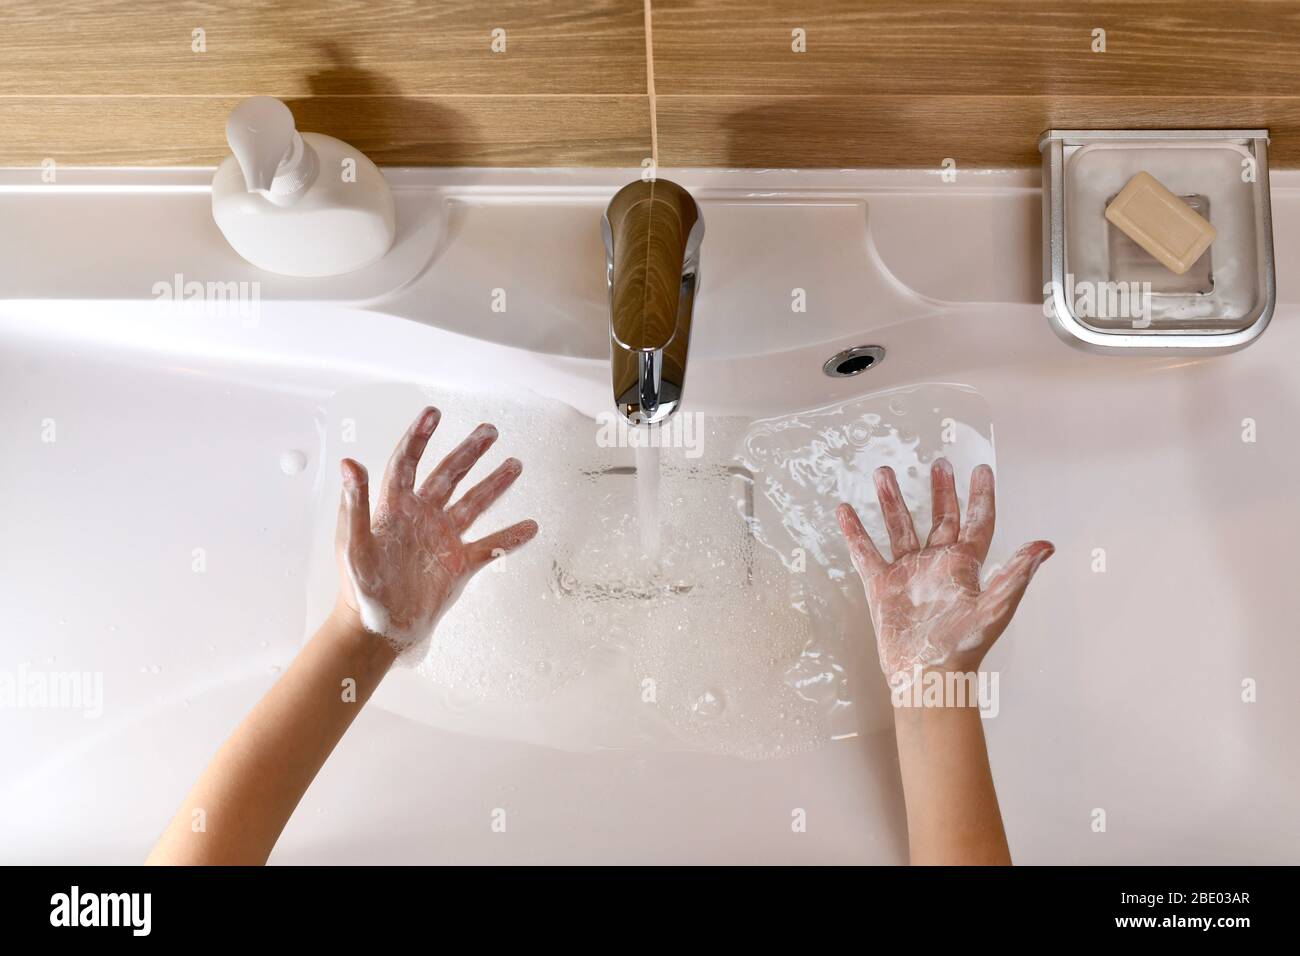 Das Kind zeigt die Handflächen, die mit Seifenschaum gefüllten Händen über dem Waschbecken mit Wasser zusammengerollt sind. Stockfoto